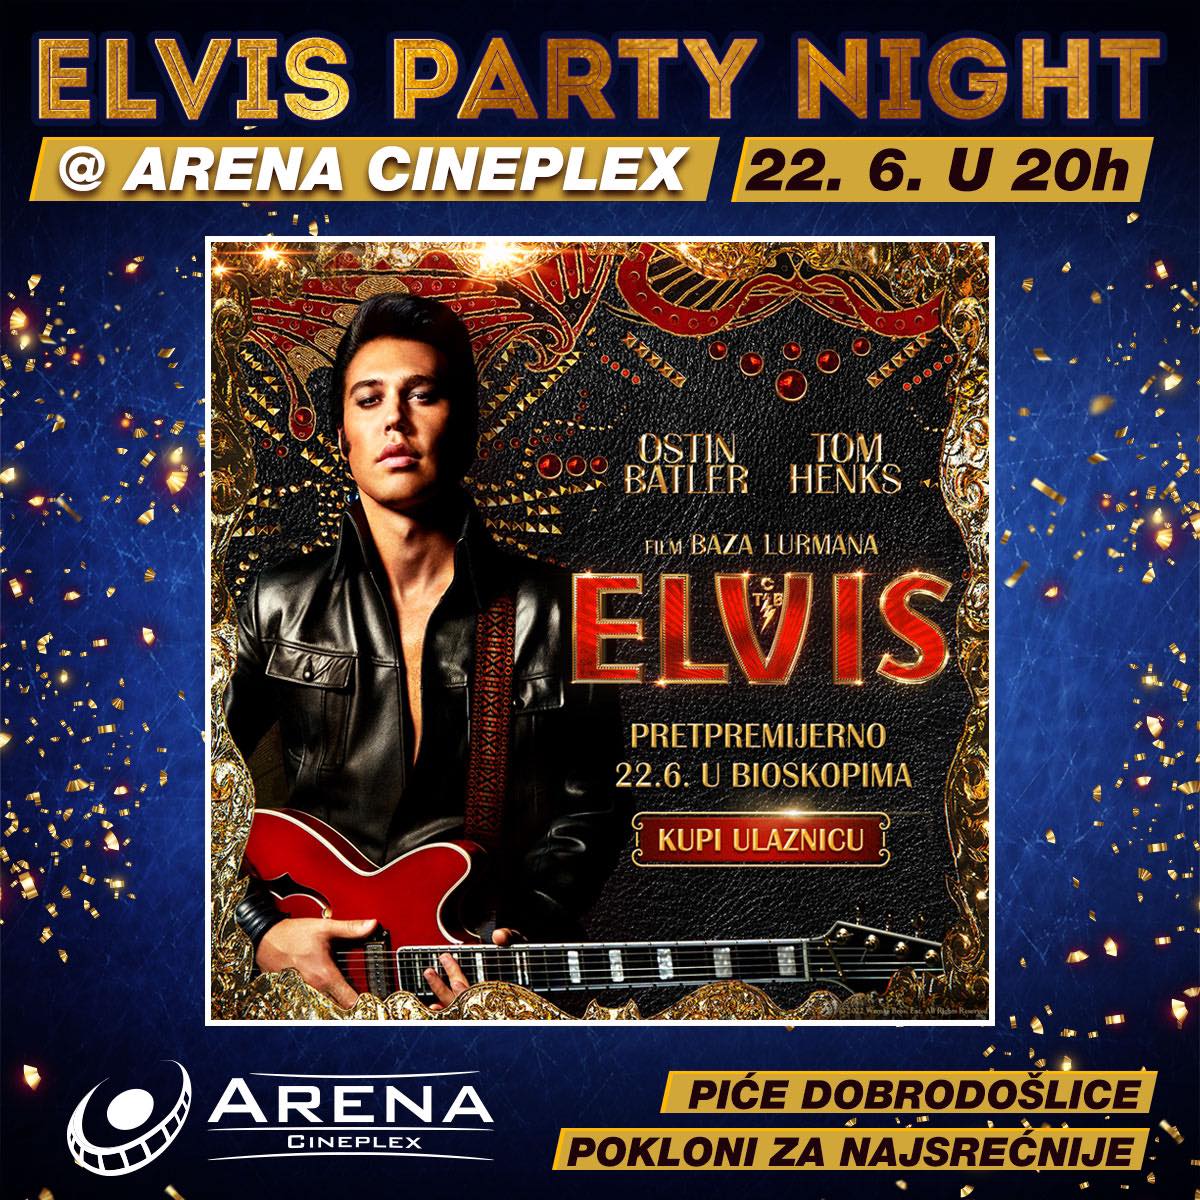 Žurka i pokloni povodom premijere filma Elvis u Areni Cineplex